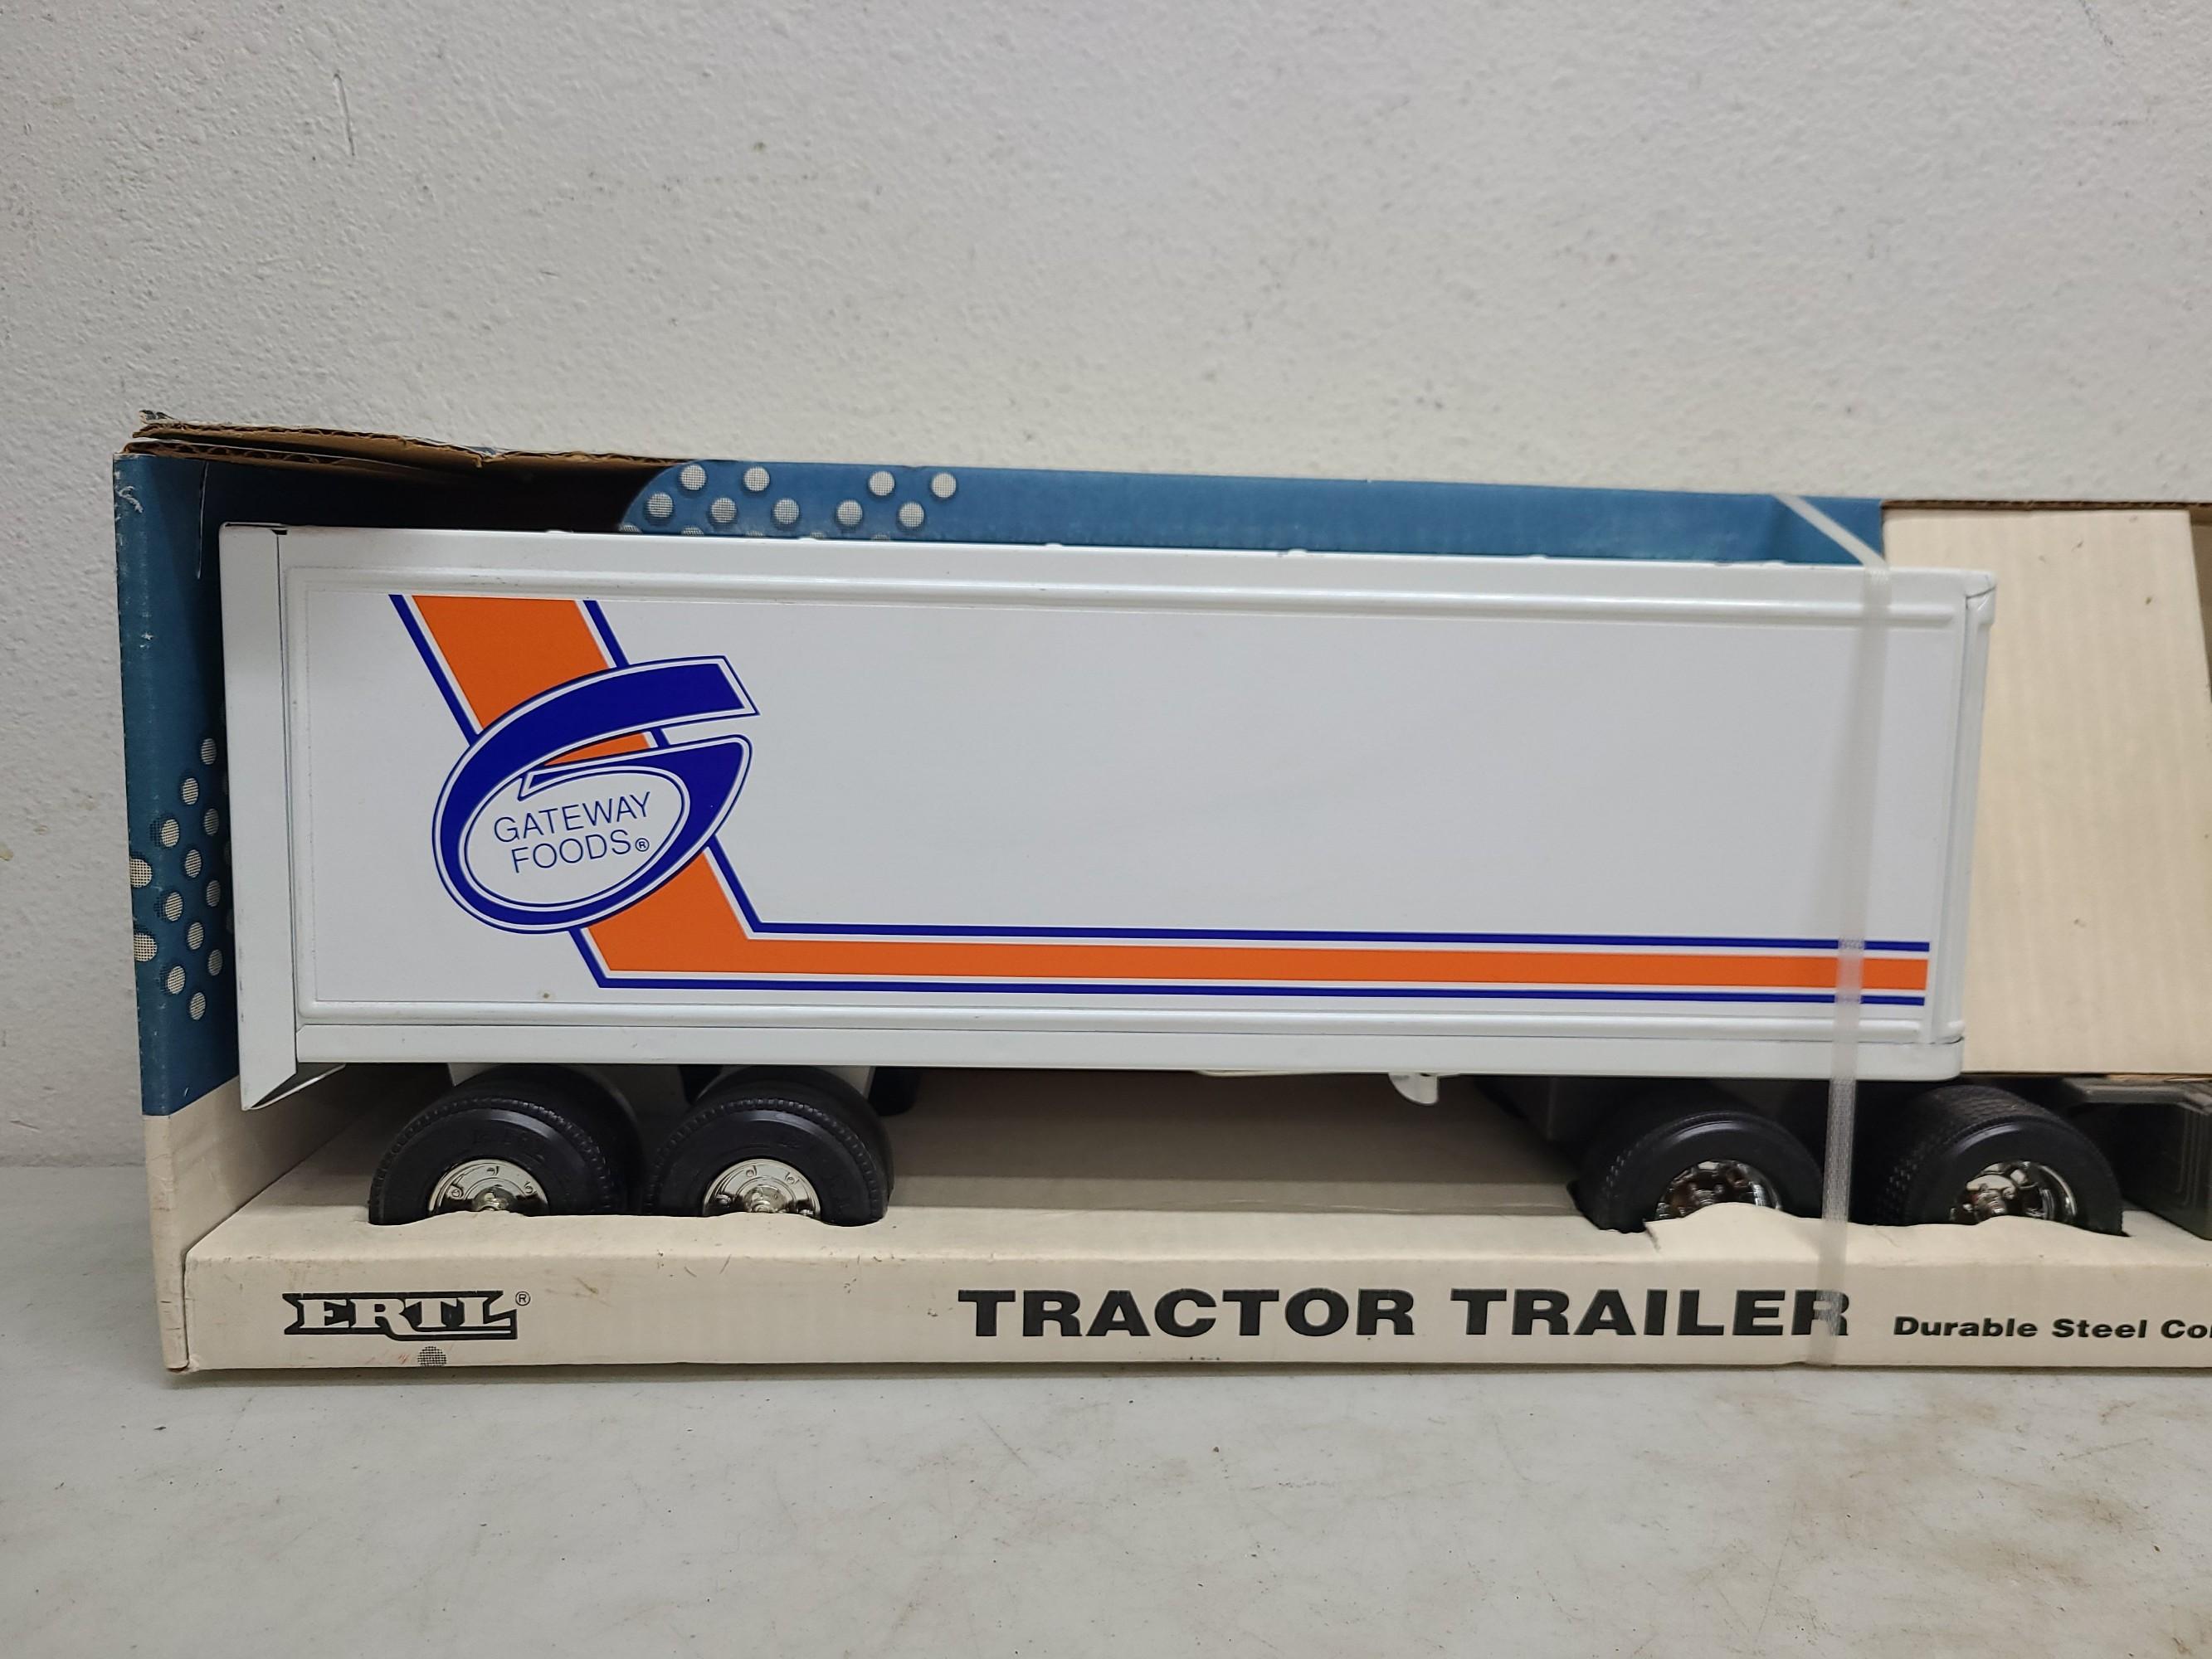 NIB Ertl Tractor Trailer Toy